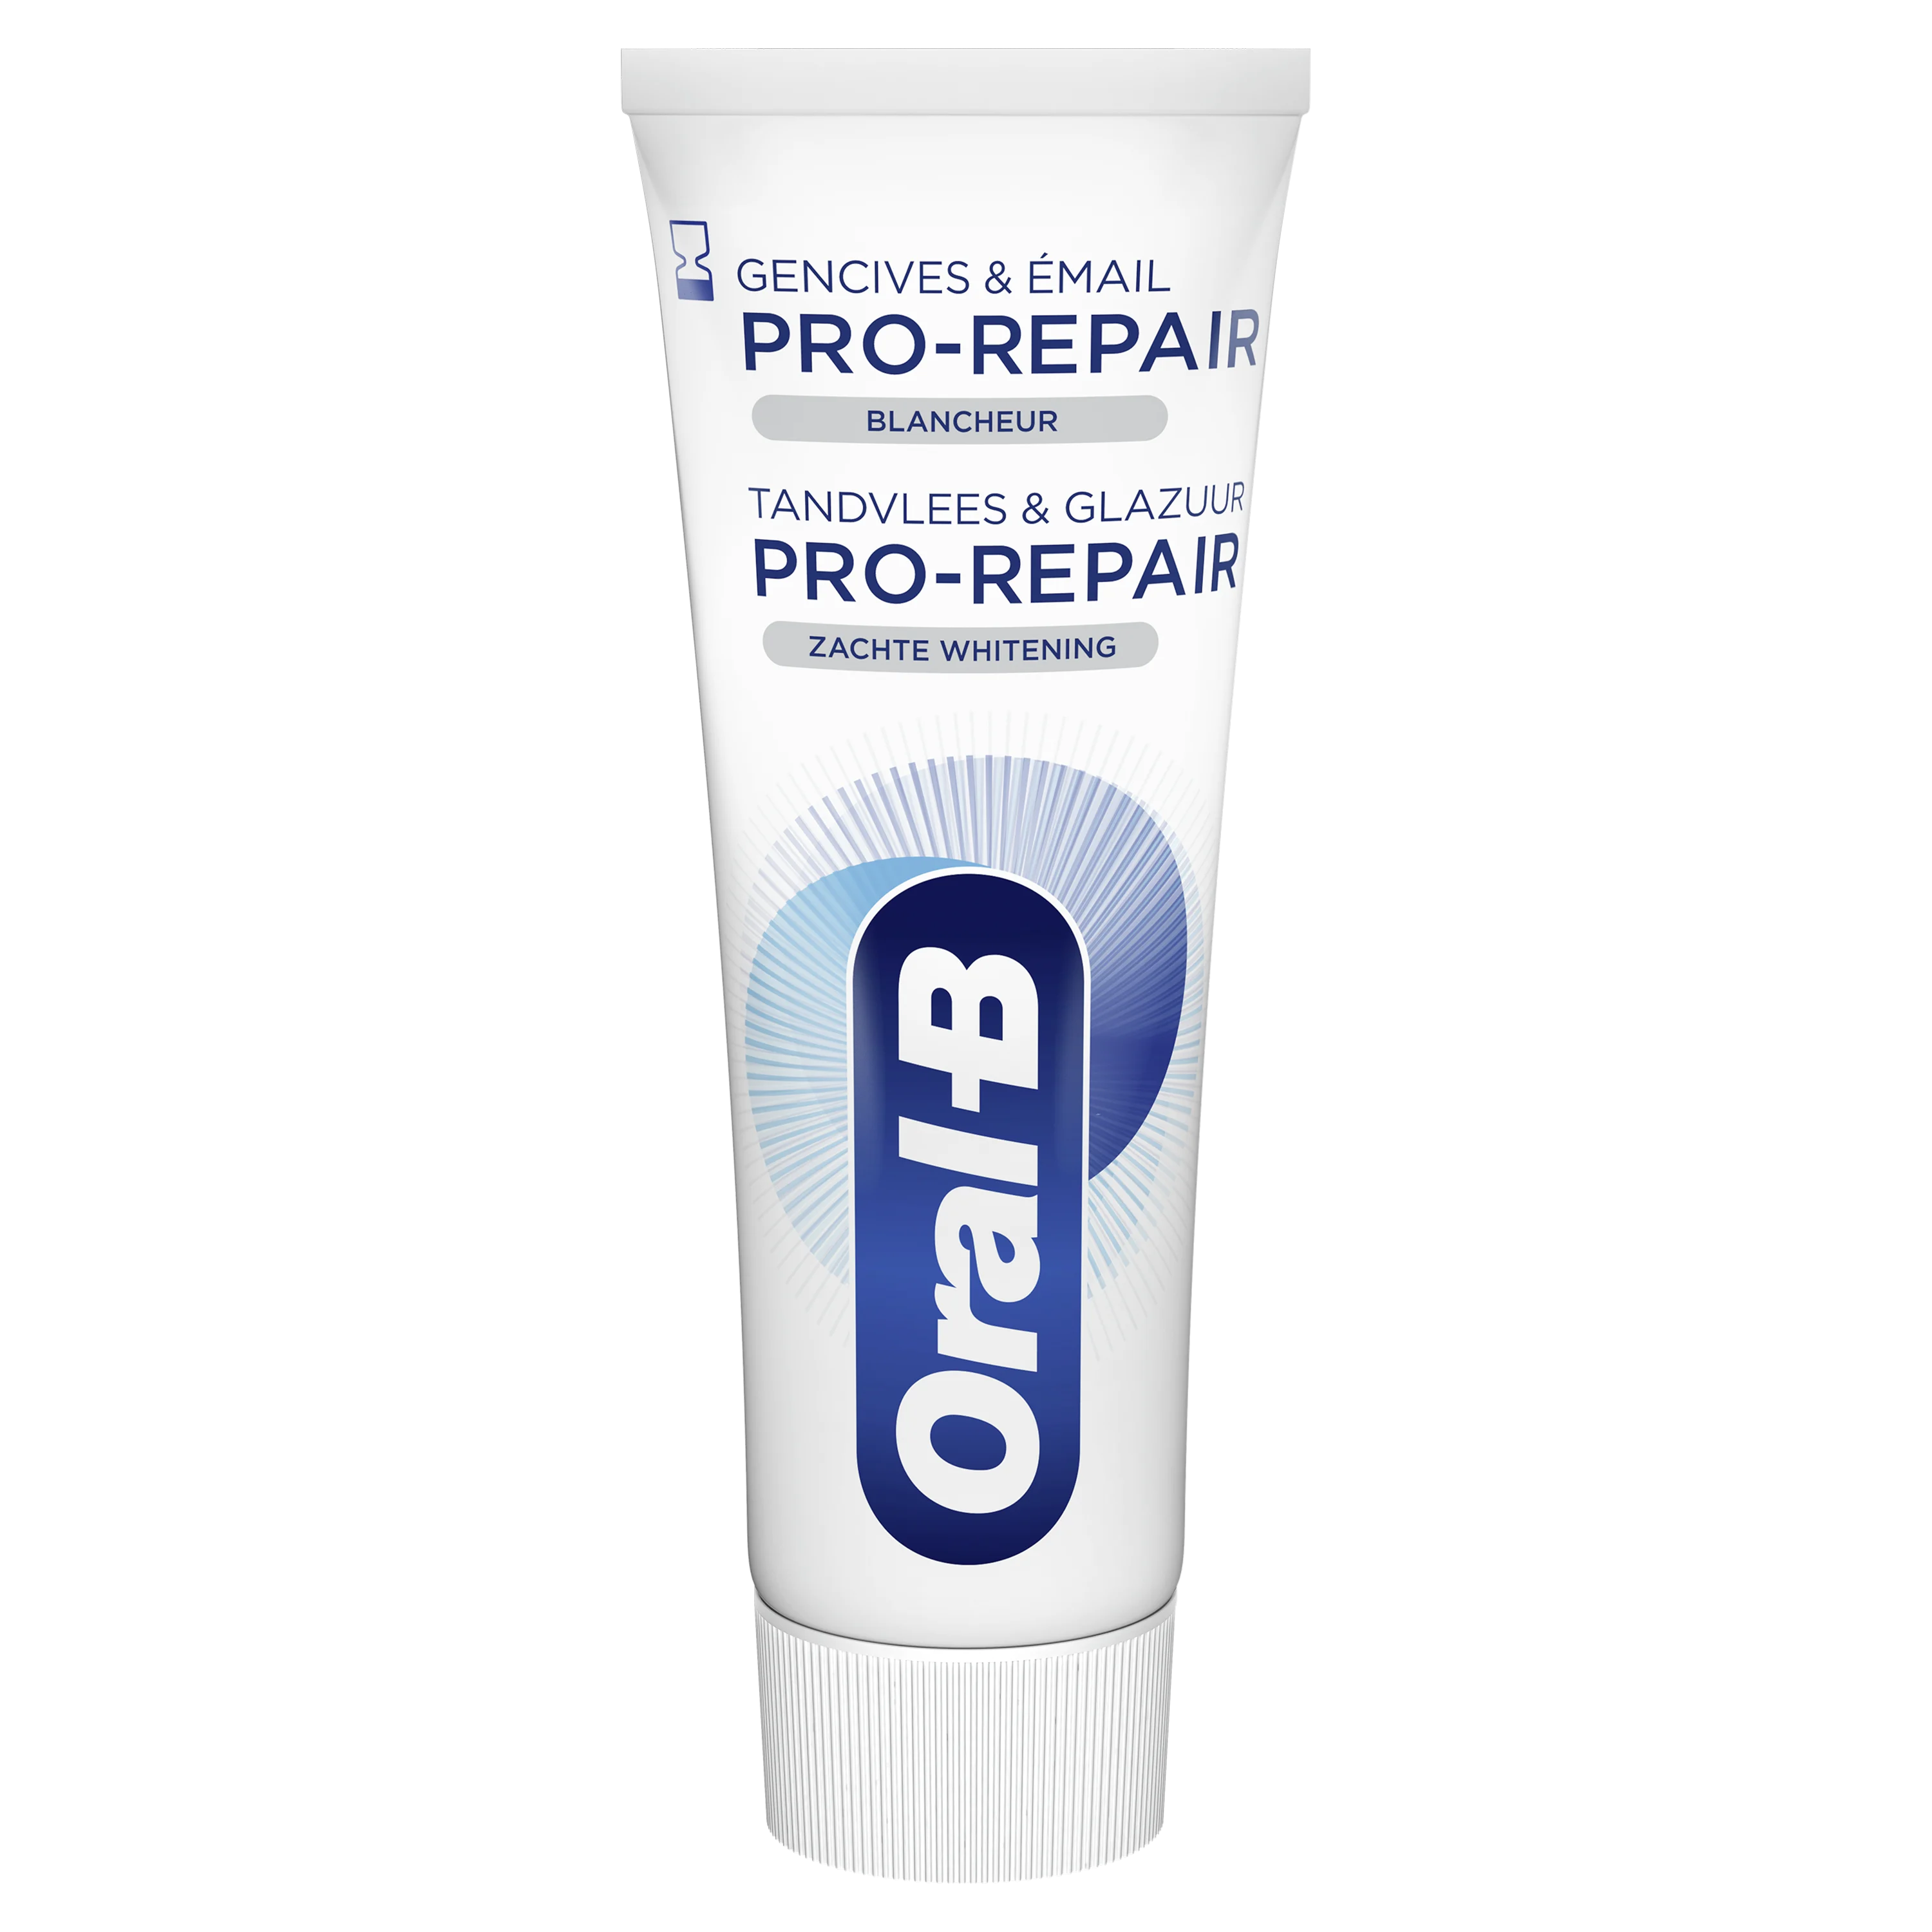 Pro-Repair & Glazuur Zachte Whitening Tandpasta | Oral-B